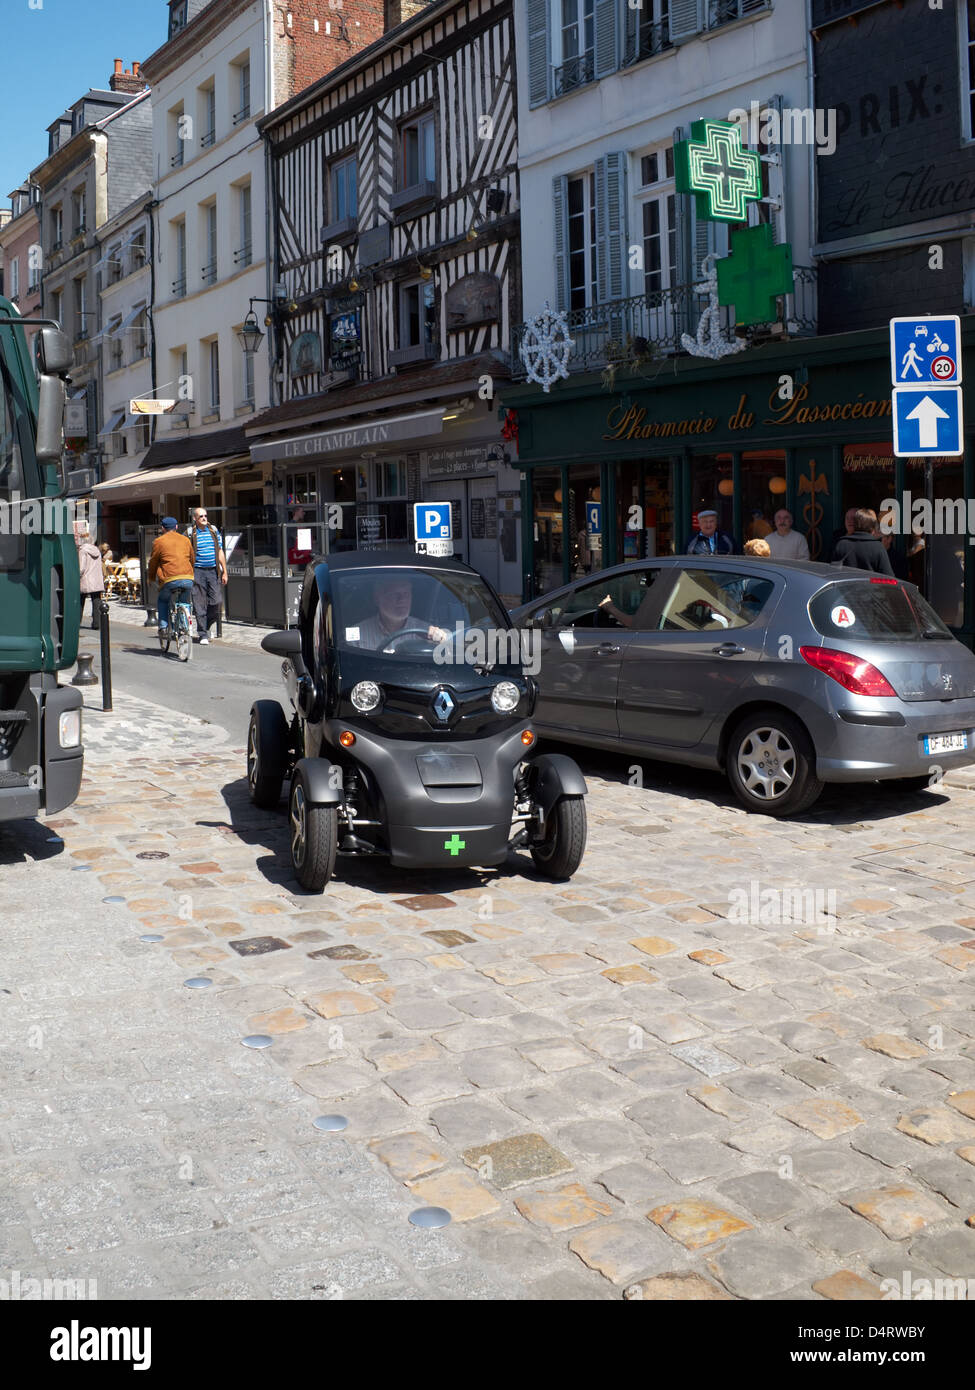 Un Twizzy Renault dans les rues de Honfleur, France. Banque D'Images